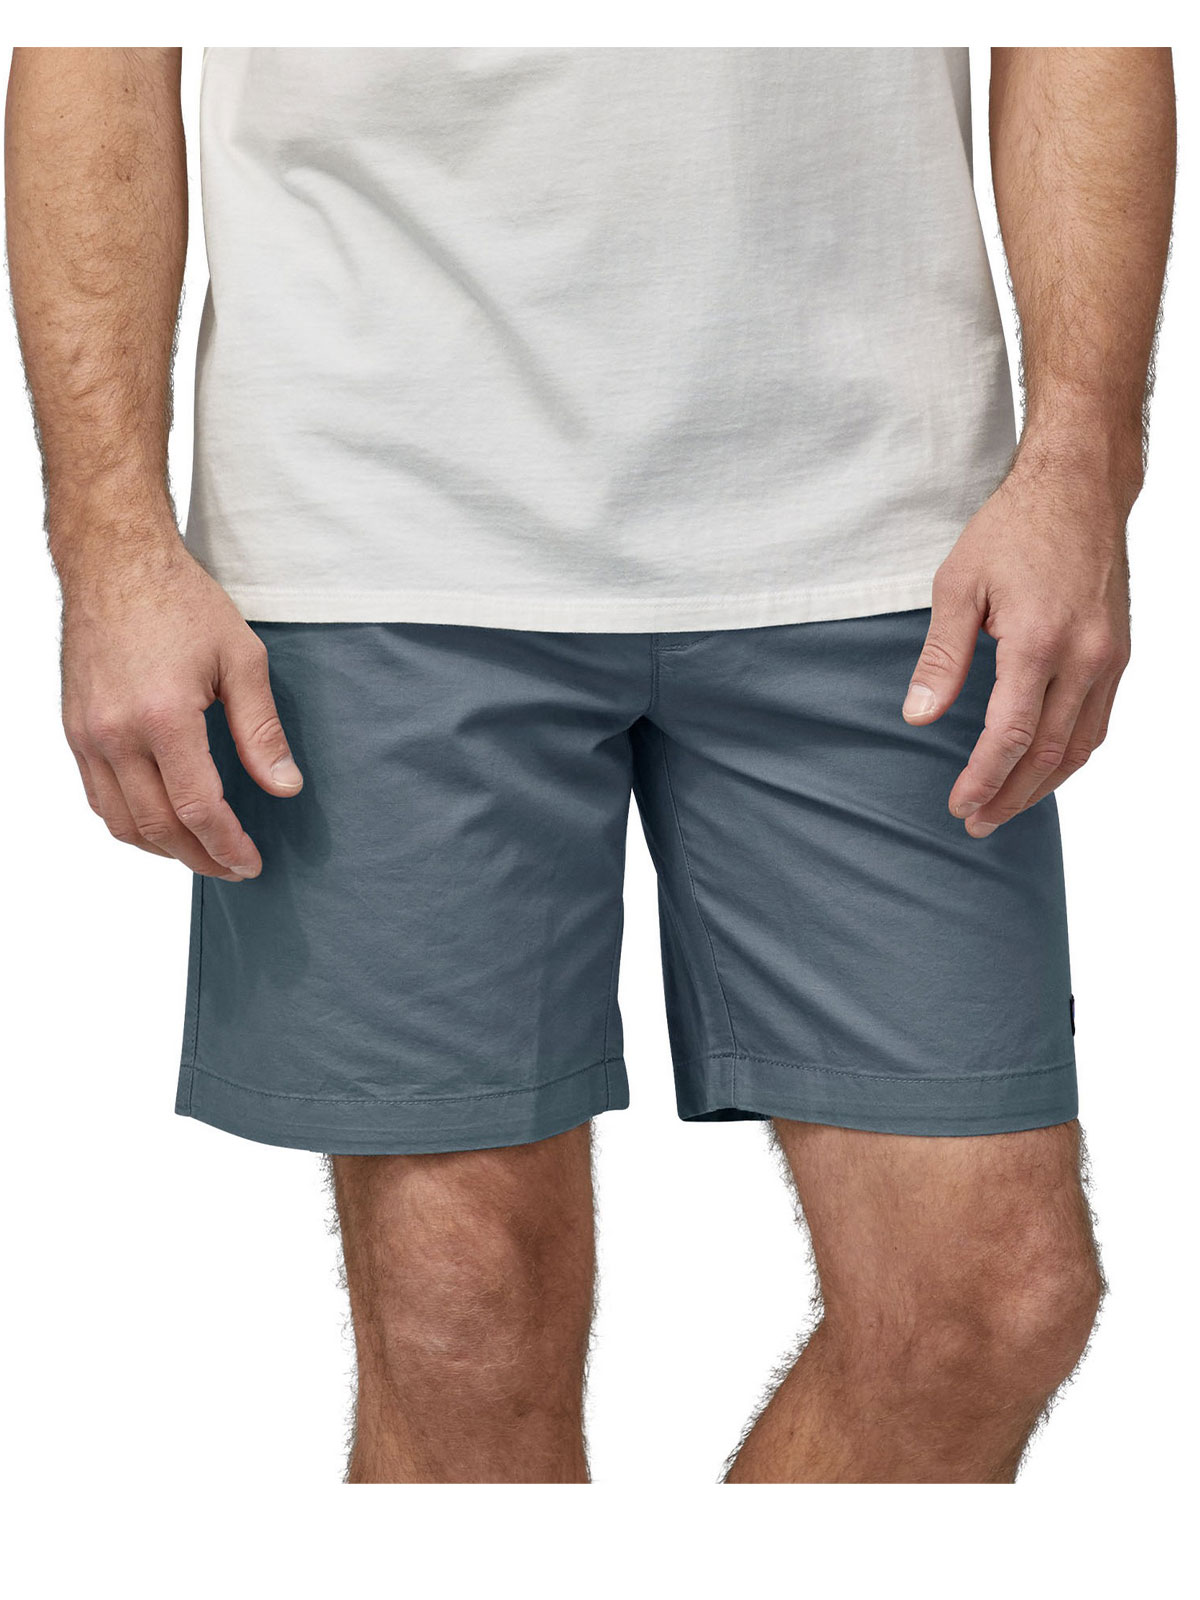 All-Wear Hemp Shorts